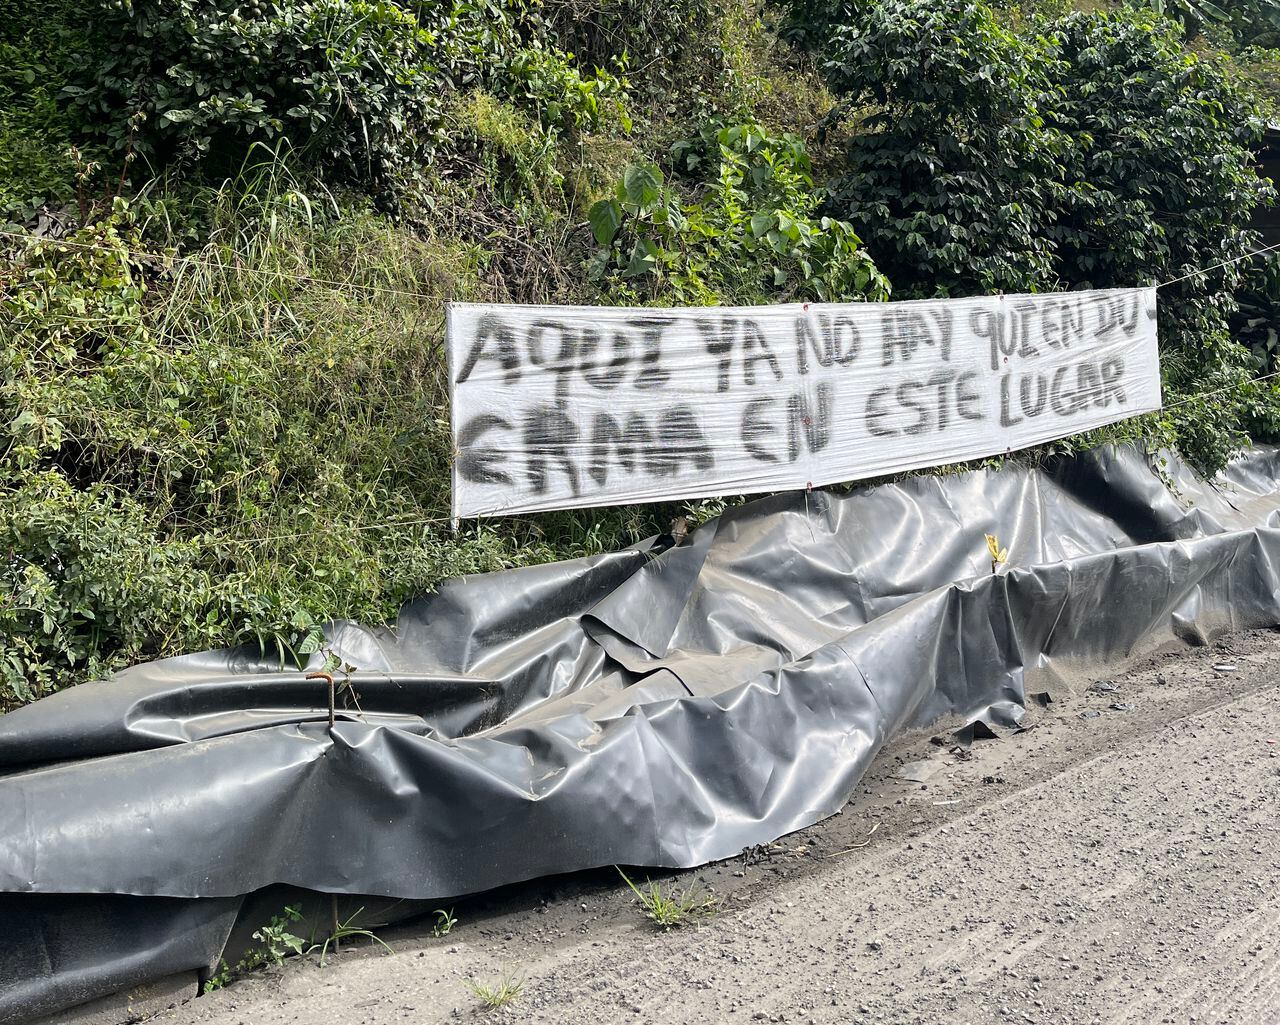 El hundimiento de la banca en el sector Curalito en la vía entre Ibagué y Cajamarca, genera detenciones de hasta 4 horas en la ruta que conecta el centro con el occidente del país.